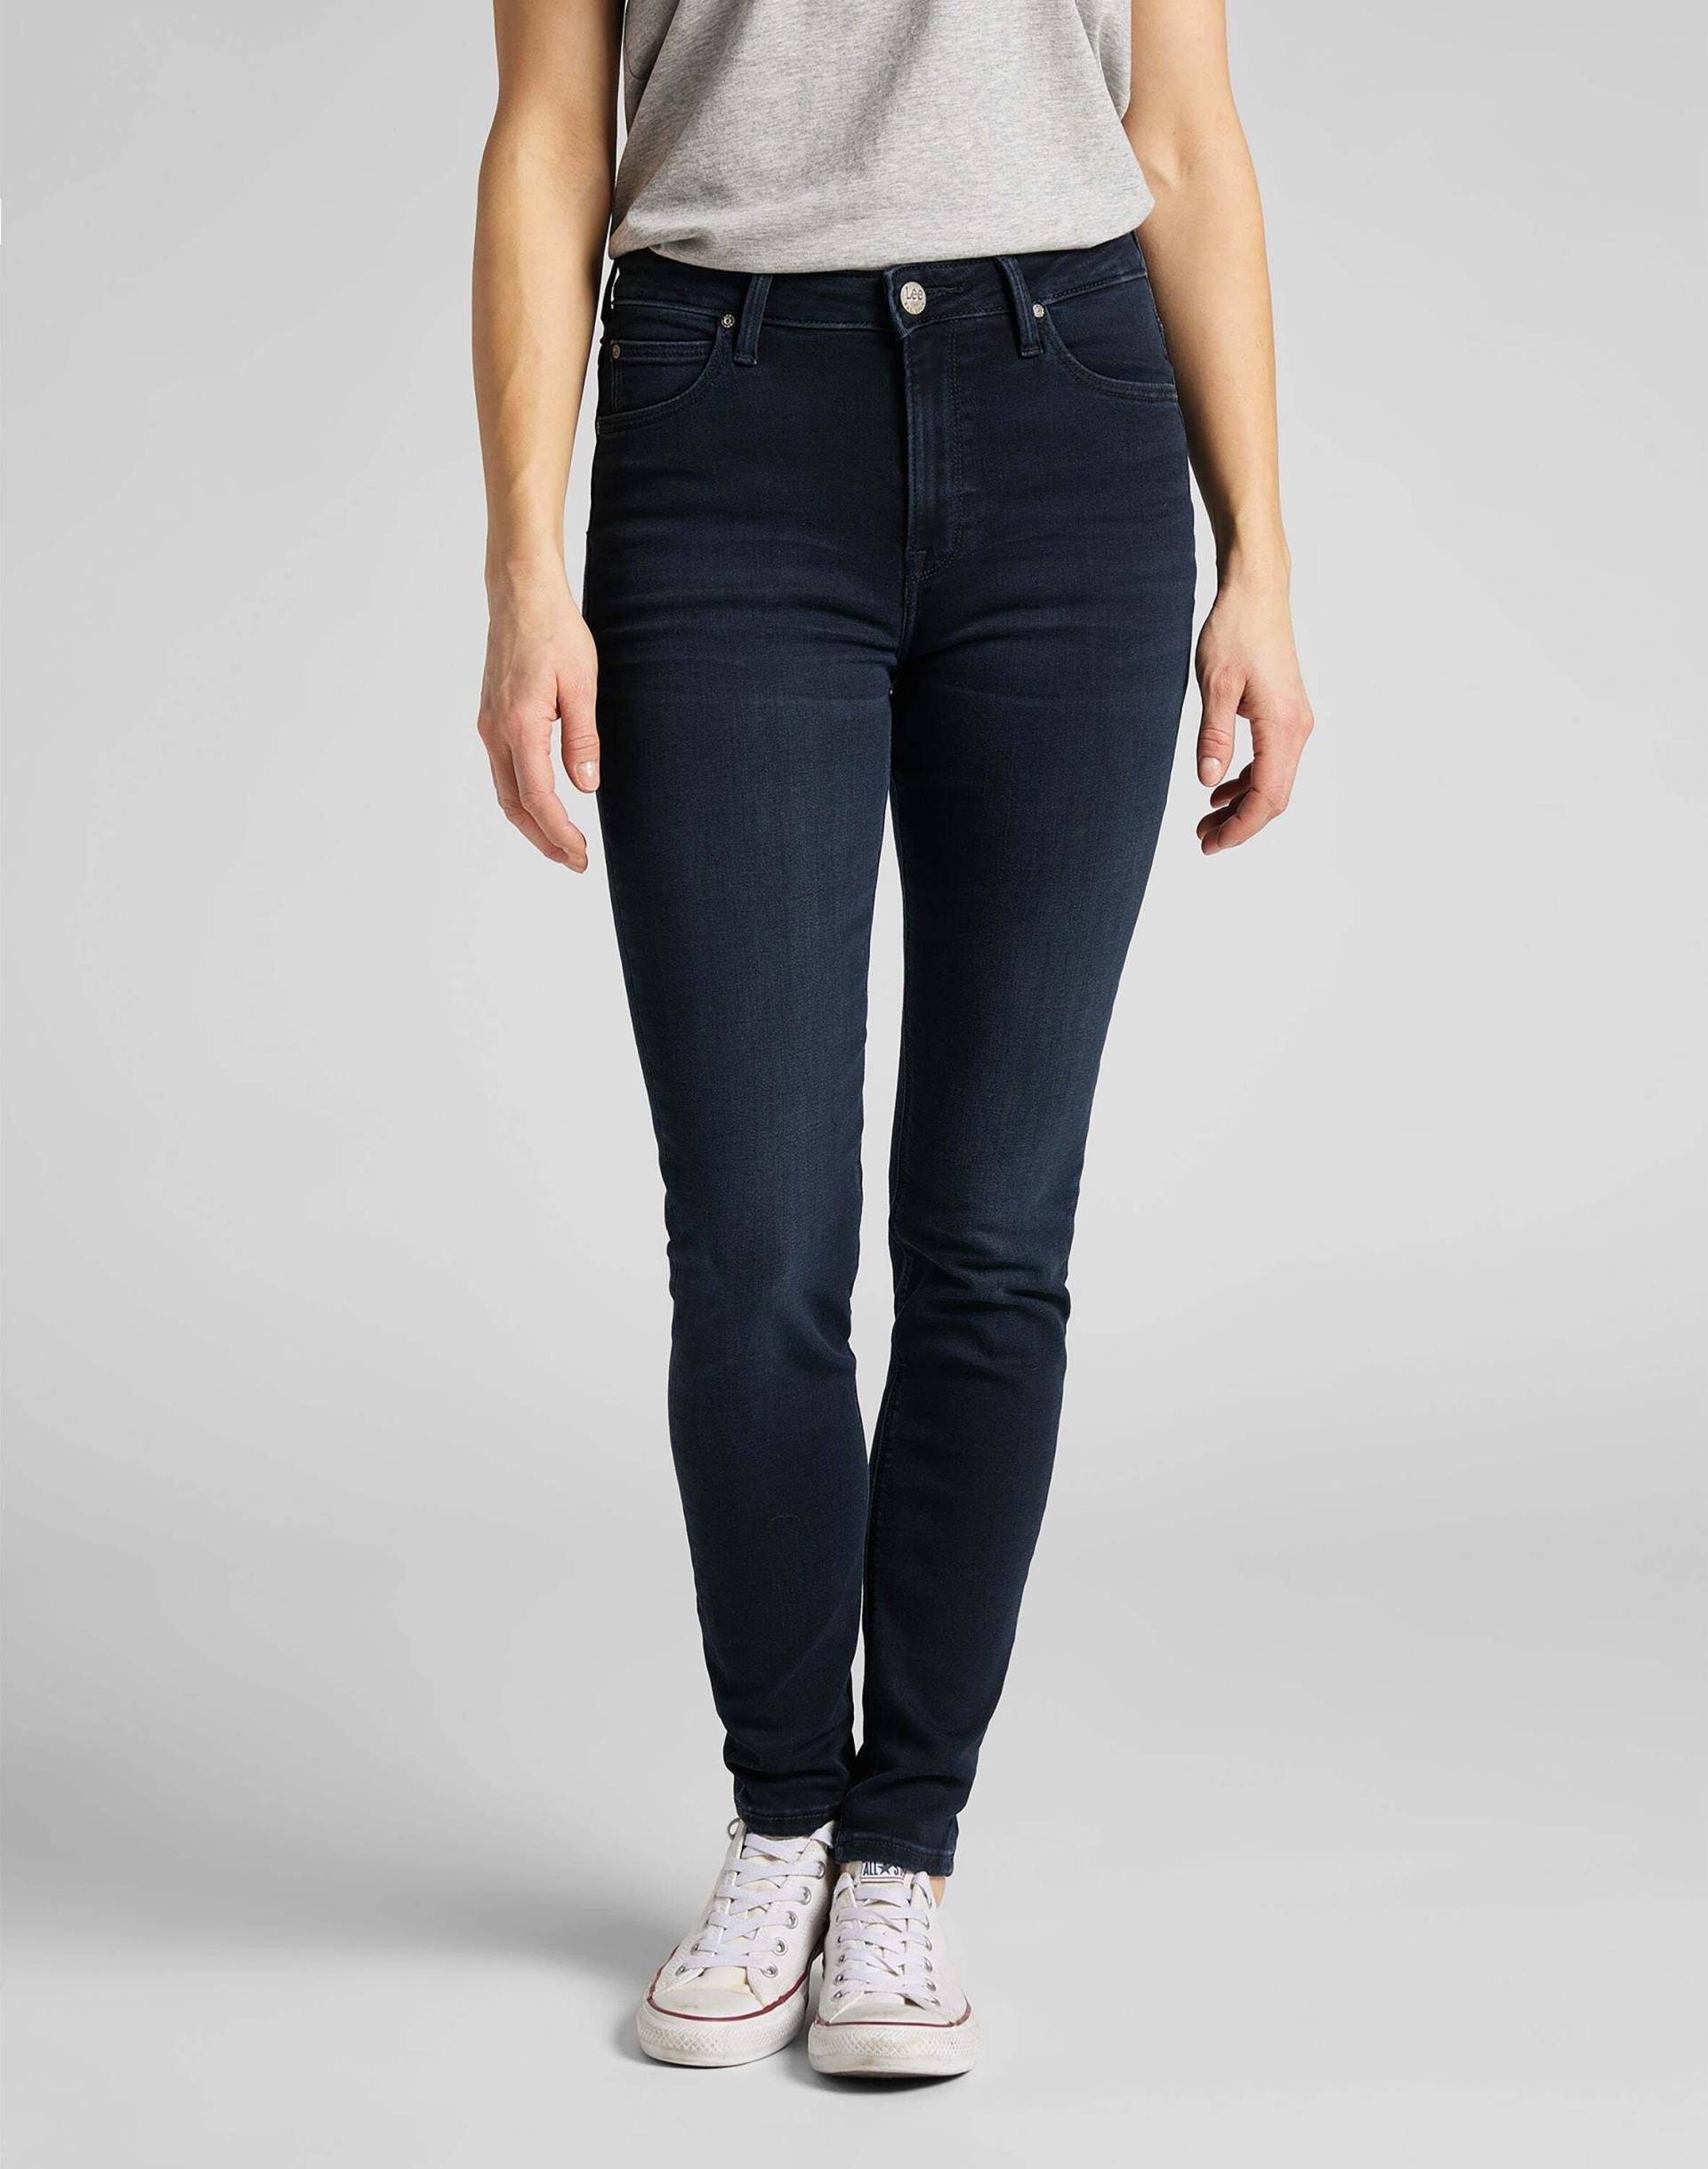 Jeans Skinny Fit Scarlett High Damen Marine L31/W27 von Lee